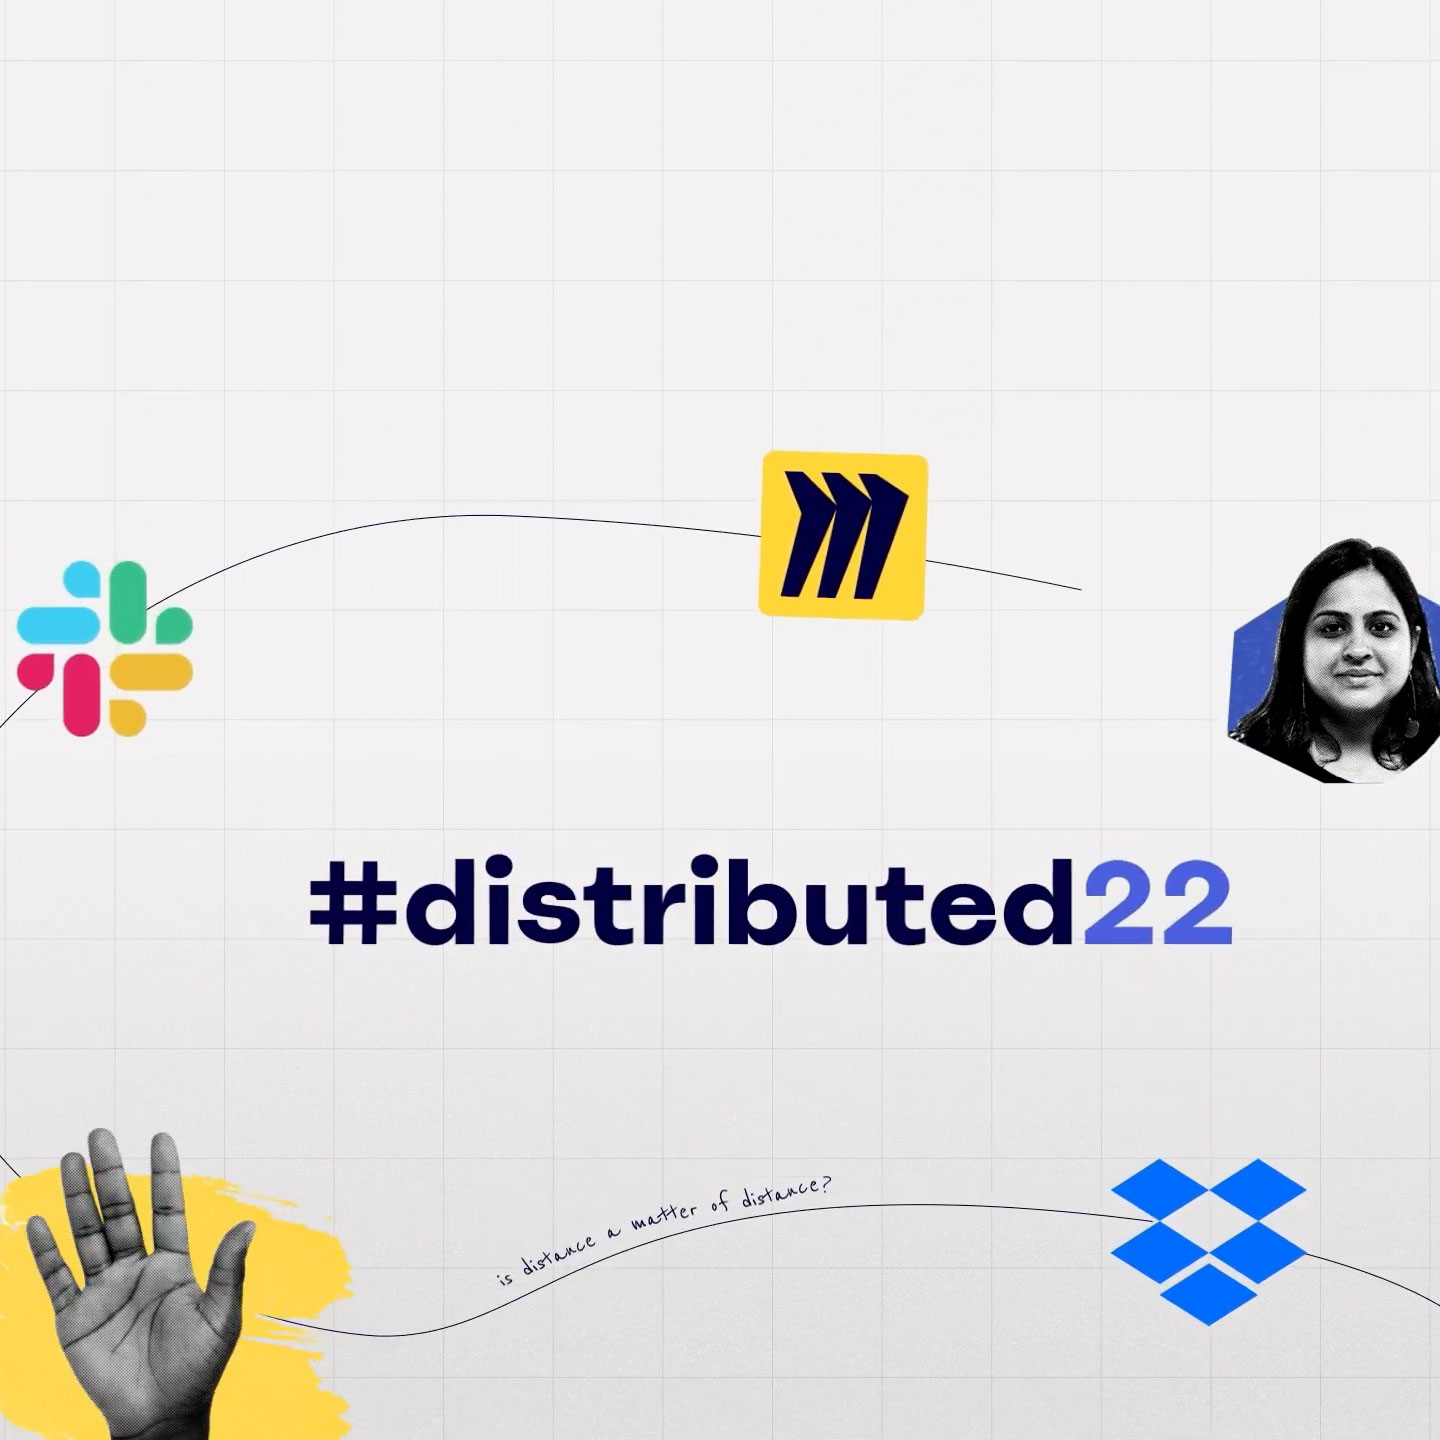 Tittelkort fra #distributed22-arrangementet med Miro-, Slack- og Dropbox-logoer